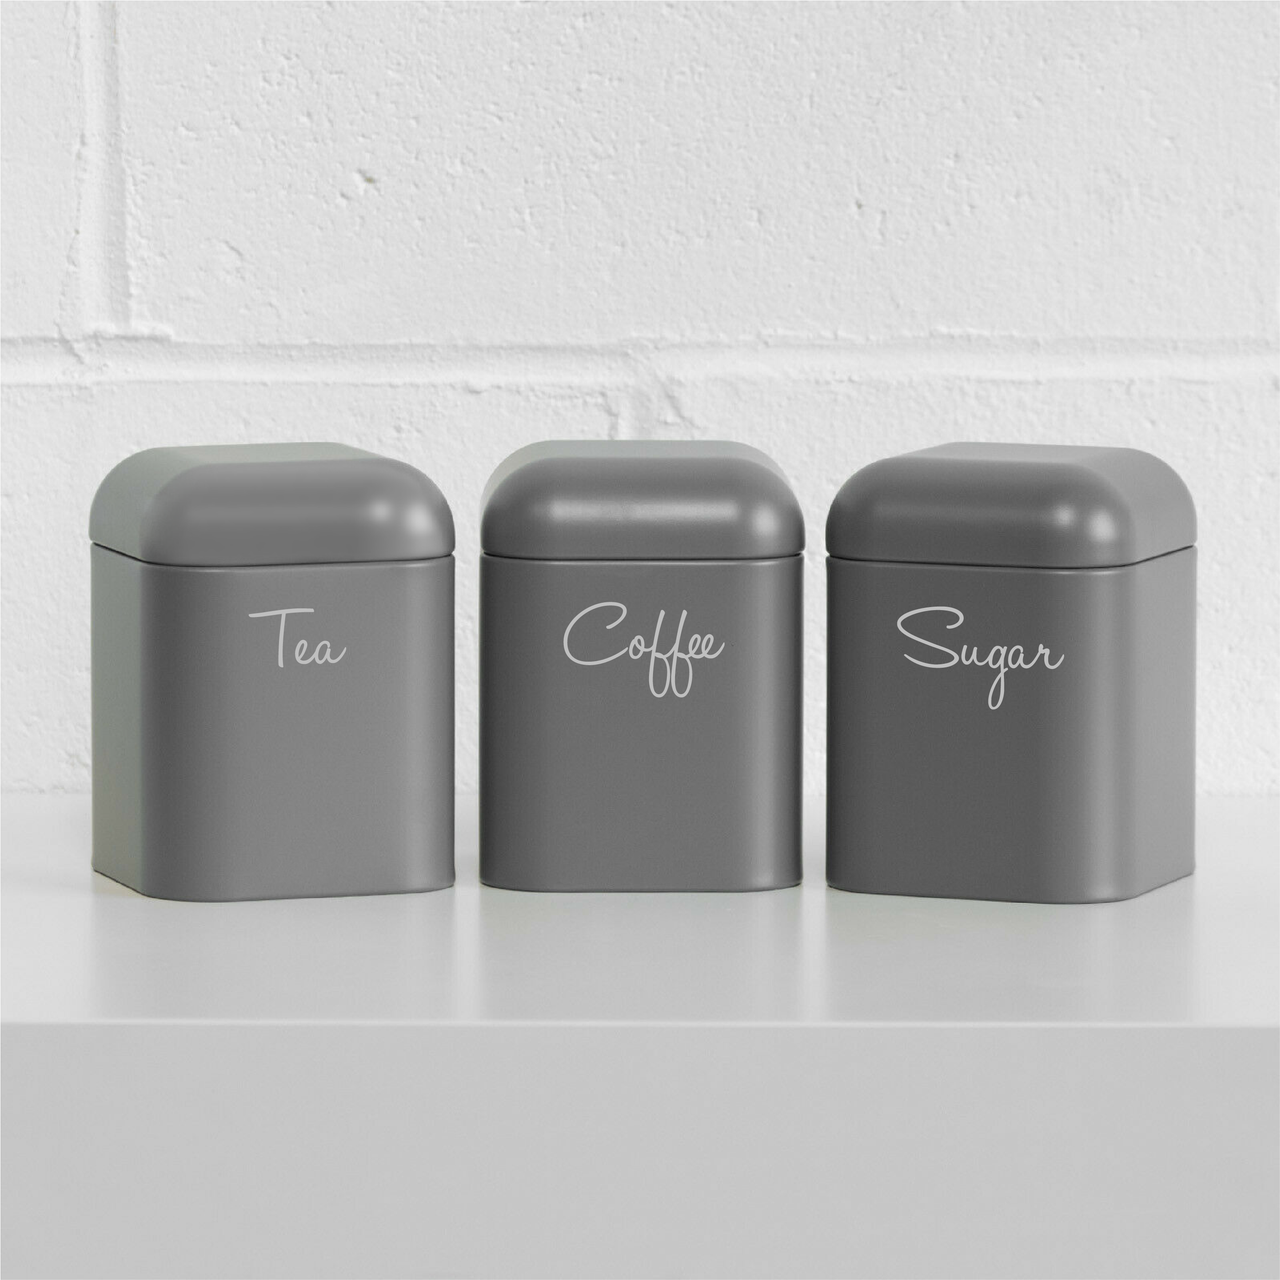 TEA COFFEE SUGAR - Kitchen Decals (Type 1)